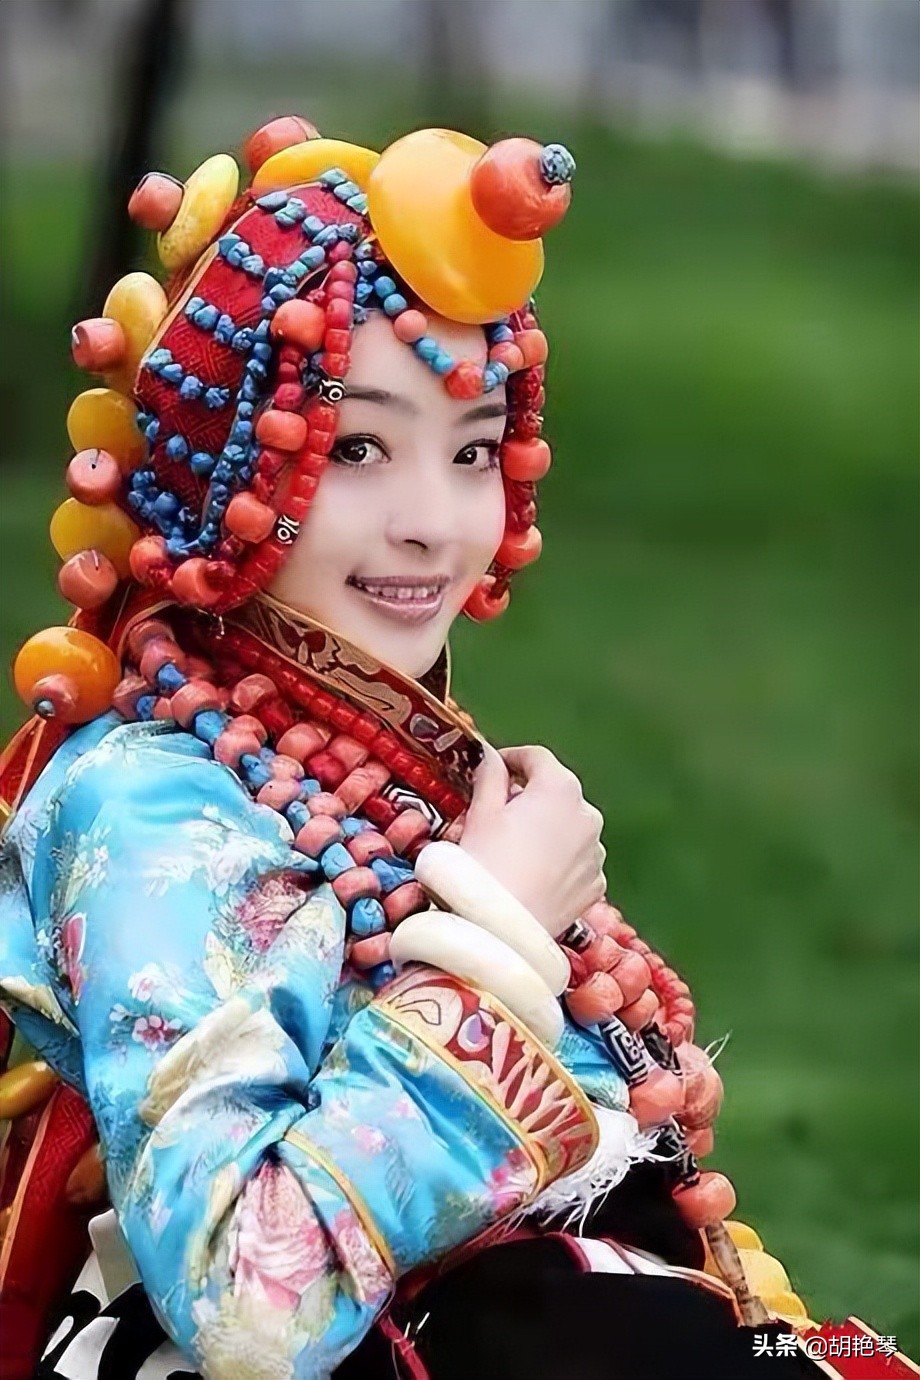 藏族服饰的最基本特征是肥腰,长袖,大襟,右衽,长裙,长靴,编发,金银珠